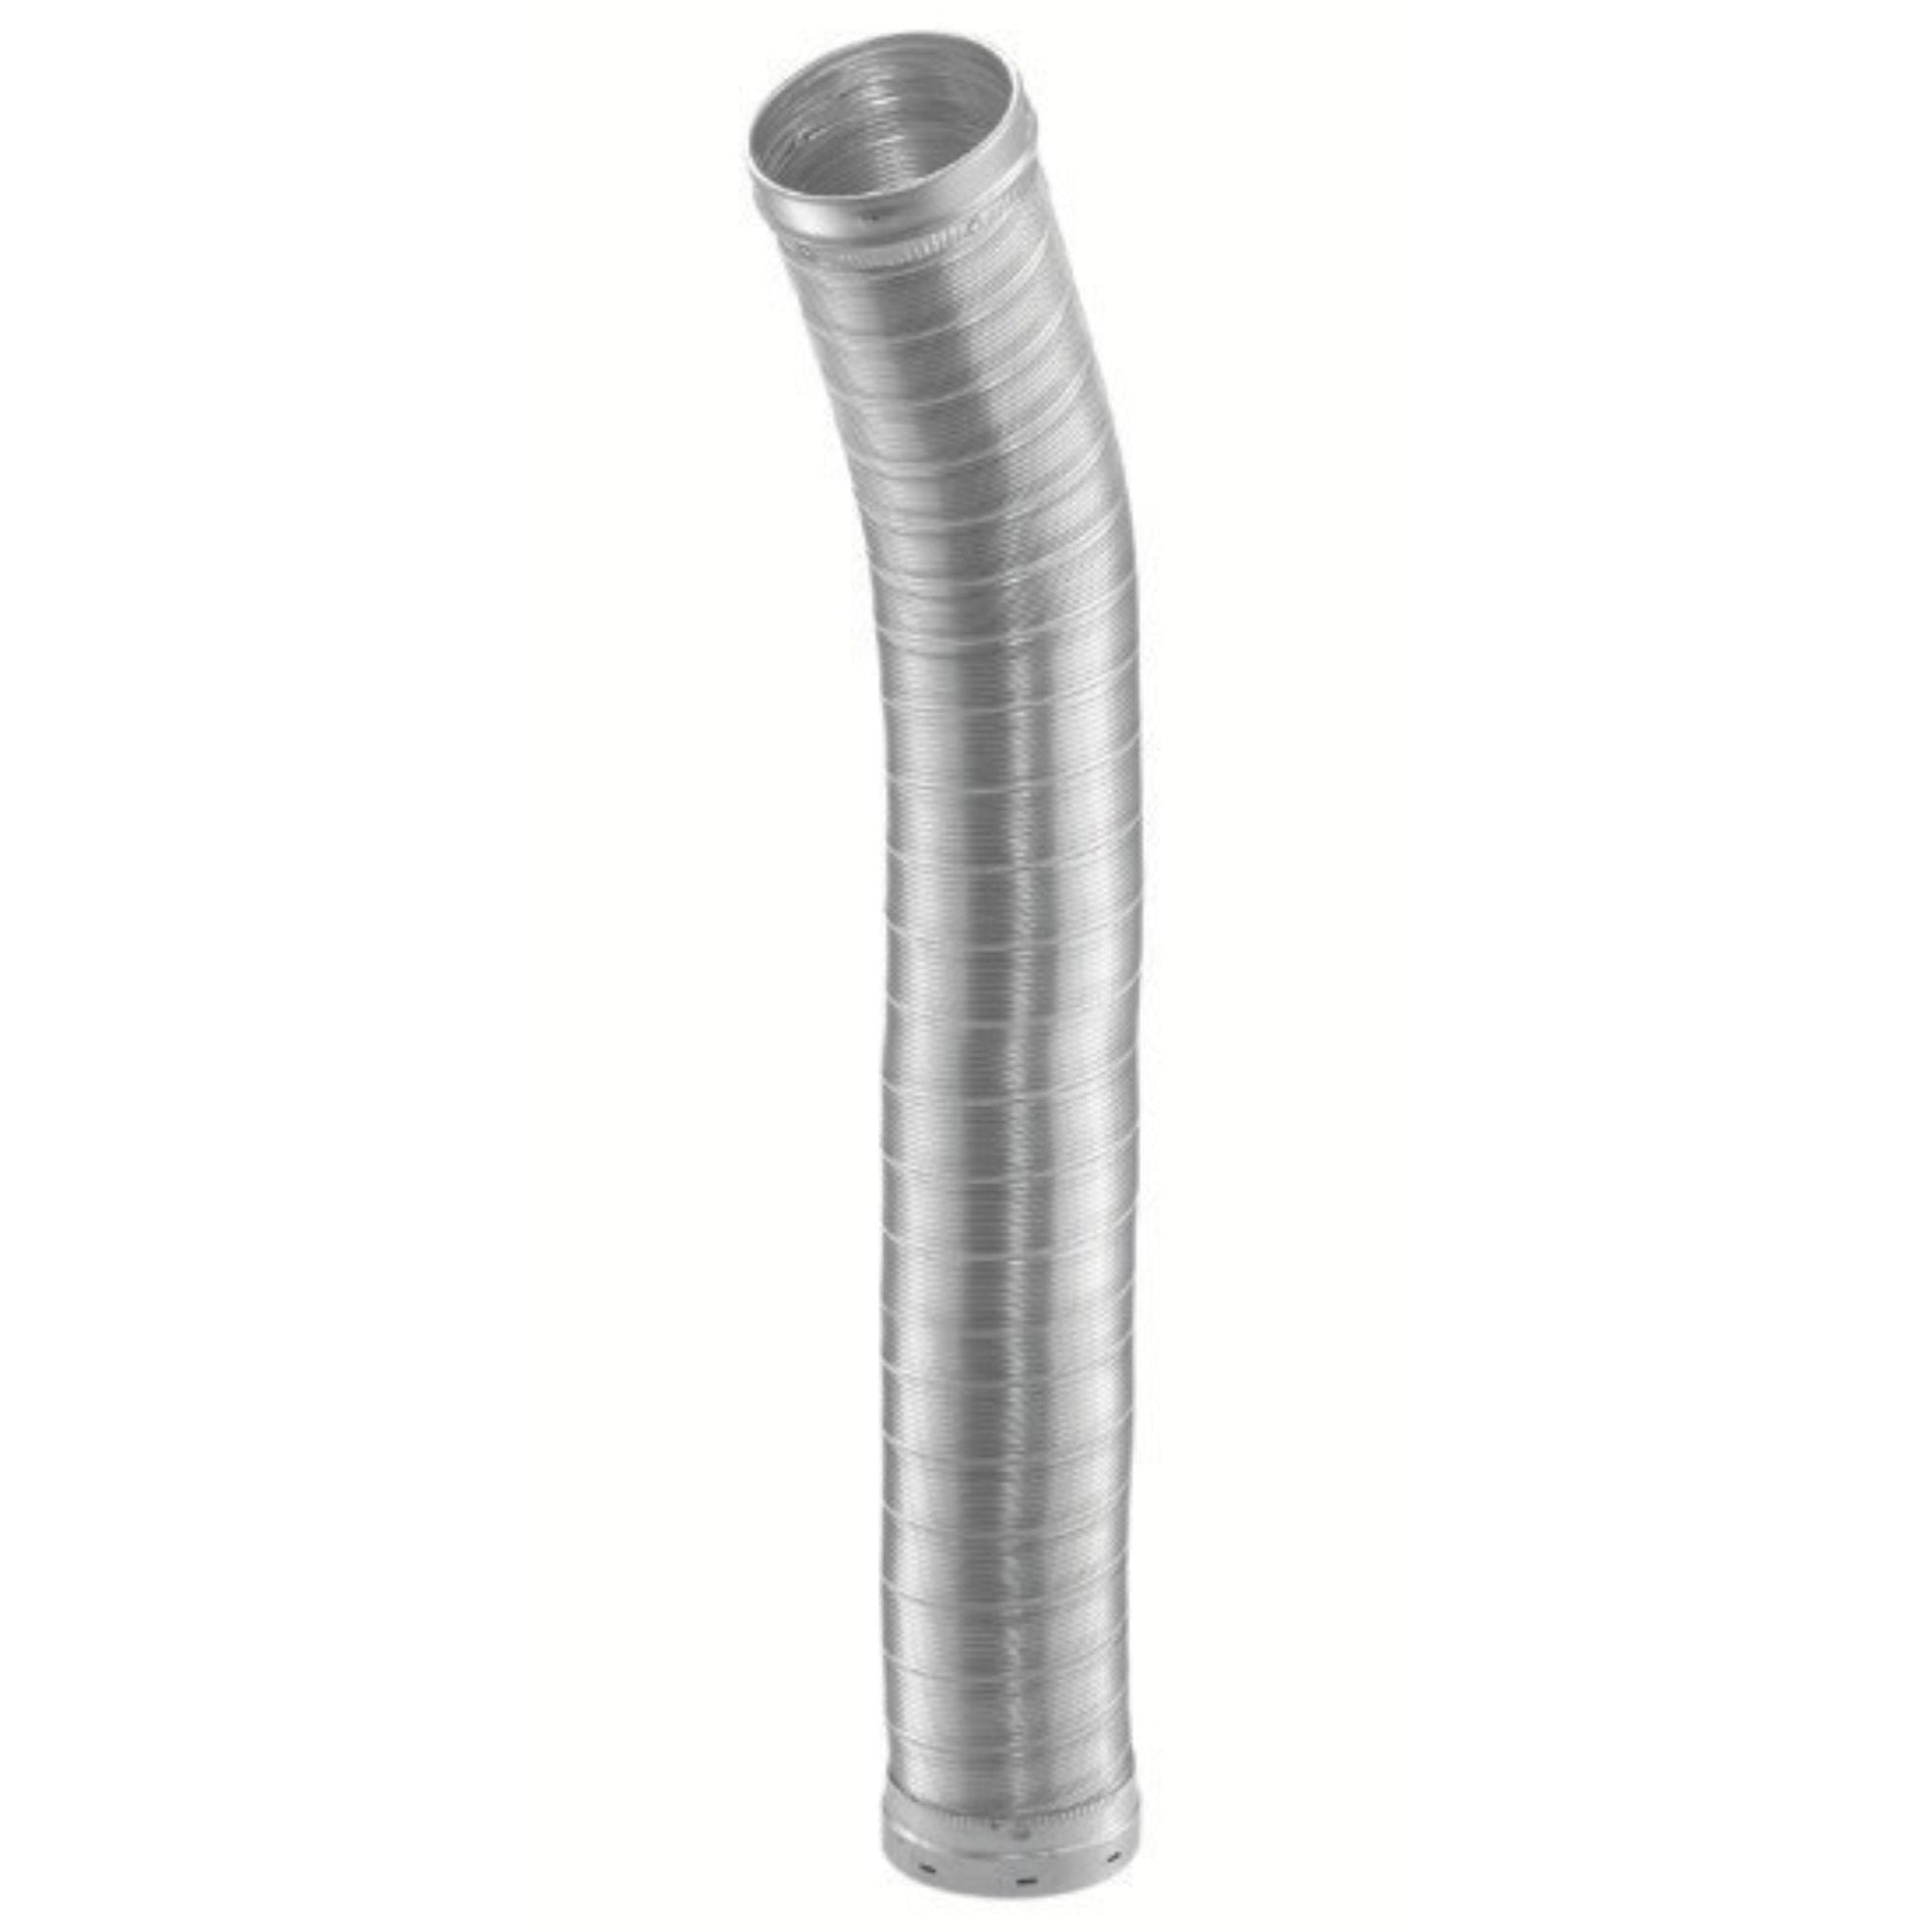 DuraVent DuraLiner 8" x 60" Round-To-Round Stainless Steel Flex Pipe